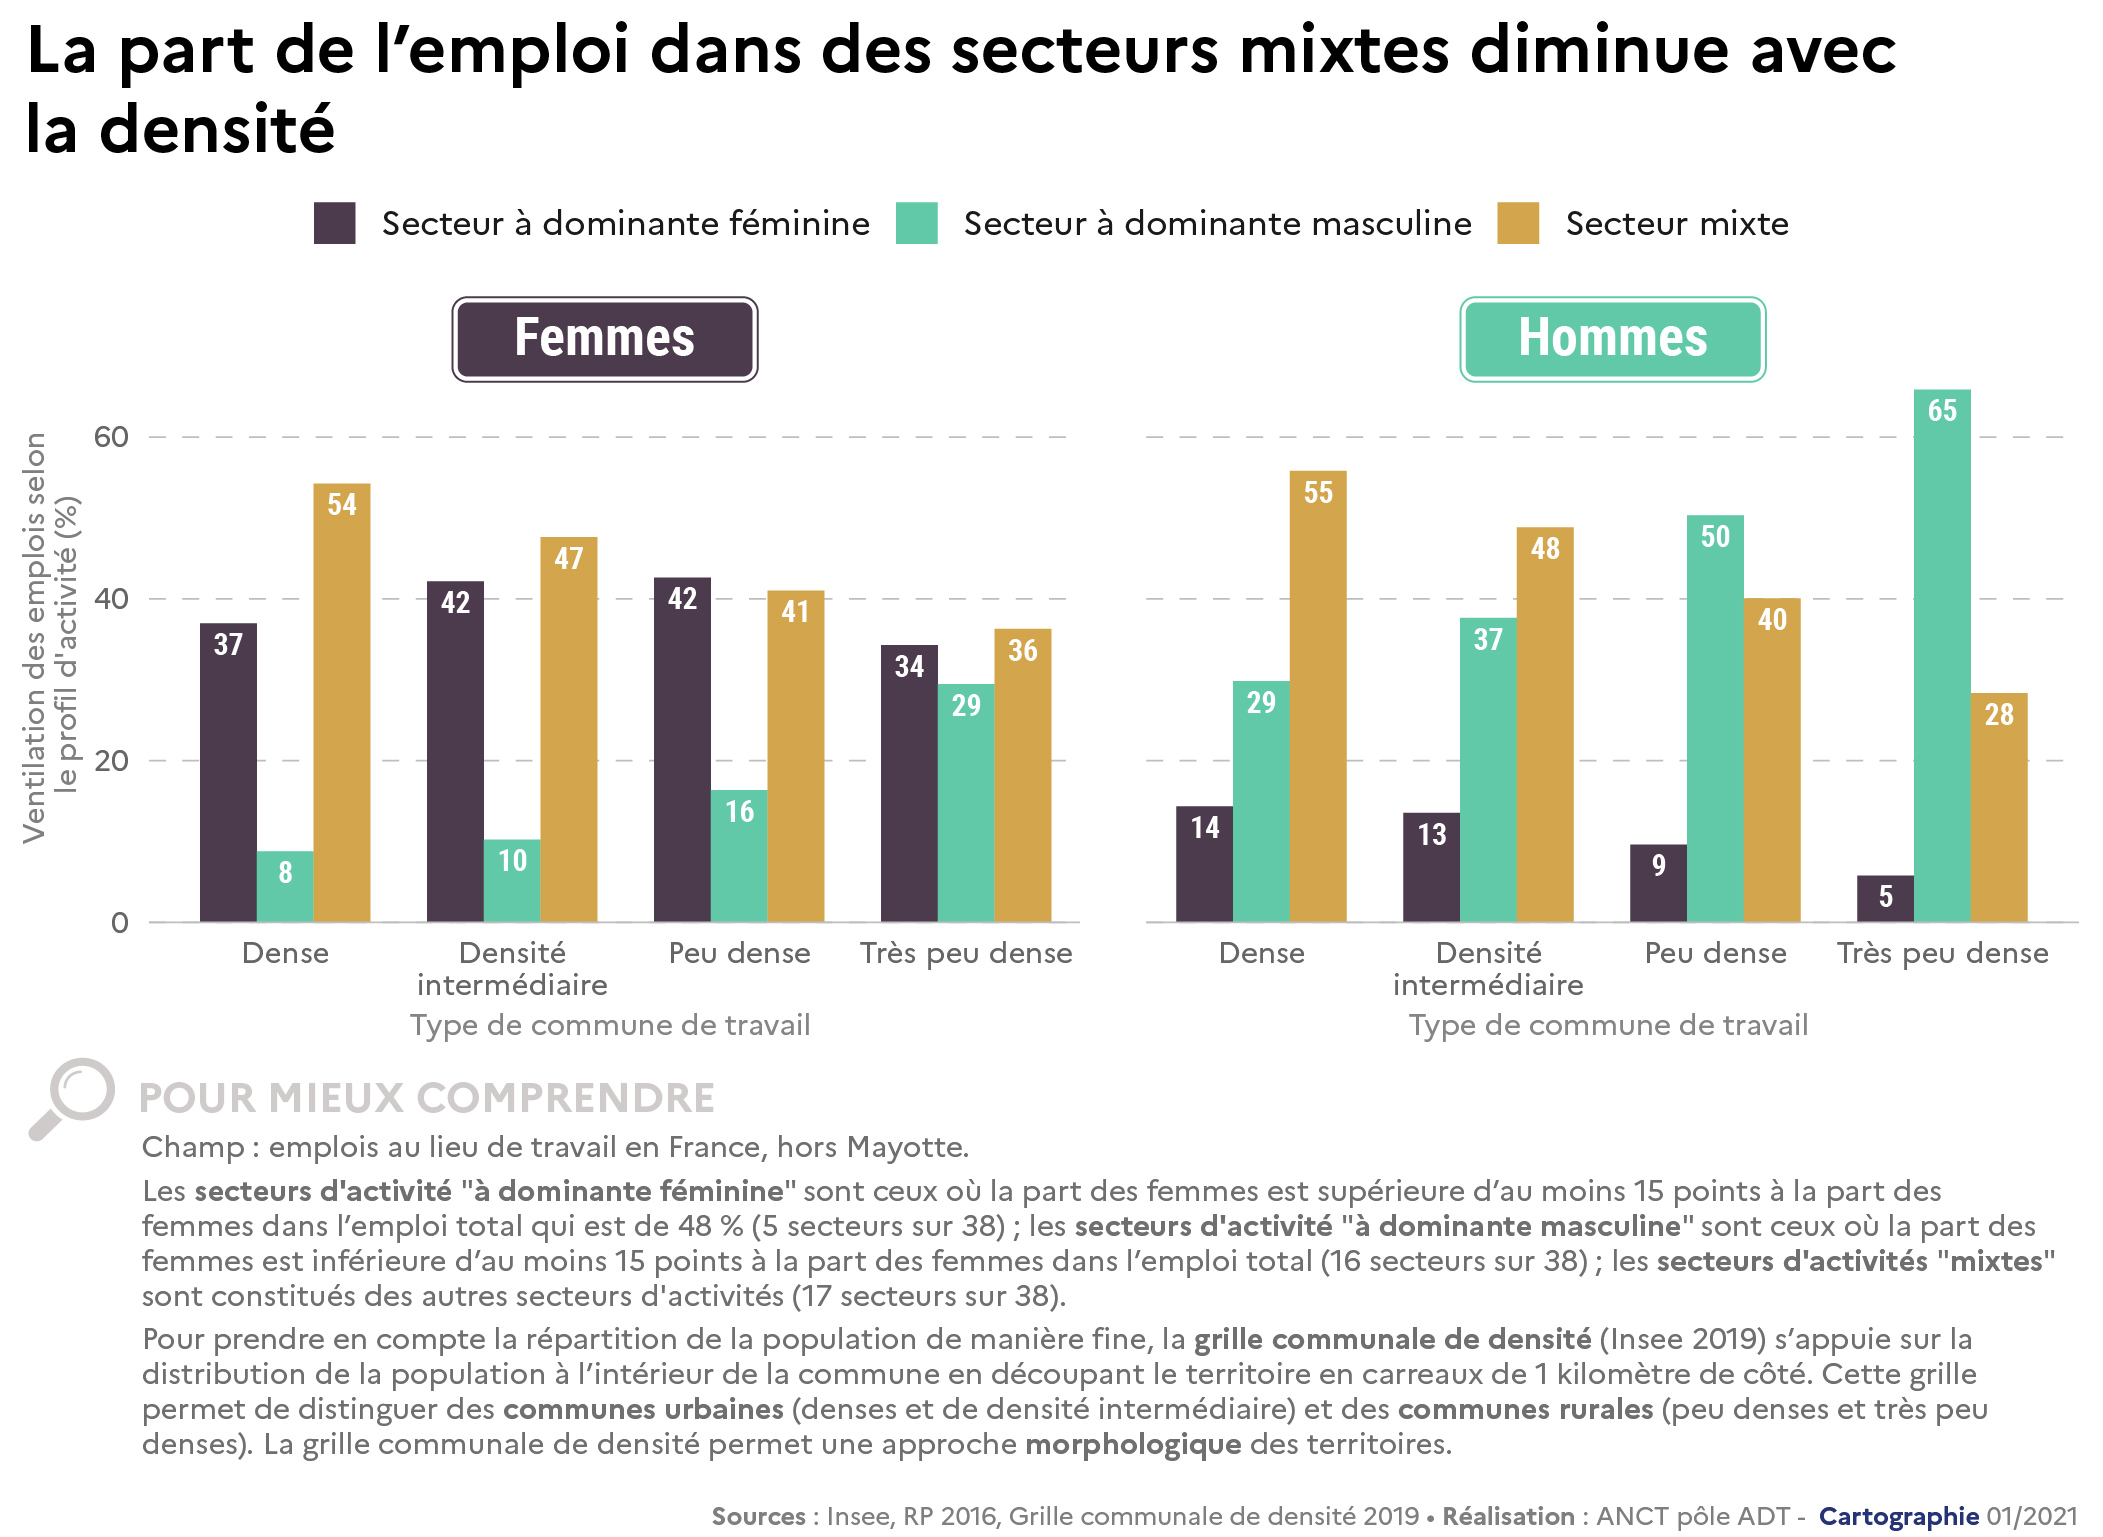 2021 - Égalité - Répartition des emplois selon la mixité femmes-hommes des secteurs d'activité et le type de territoire